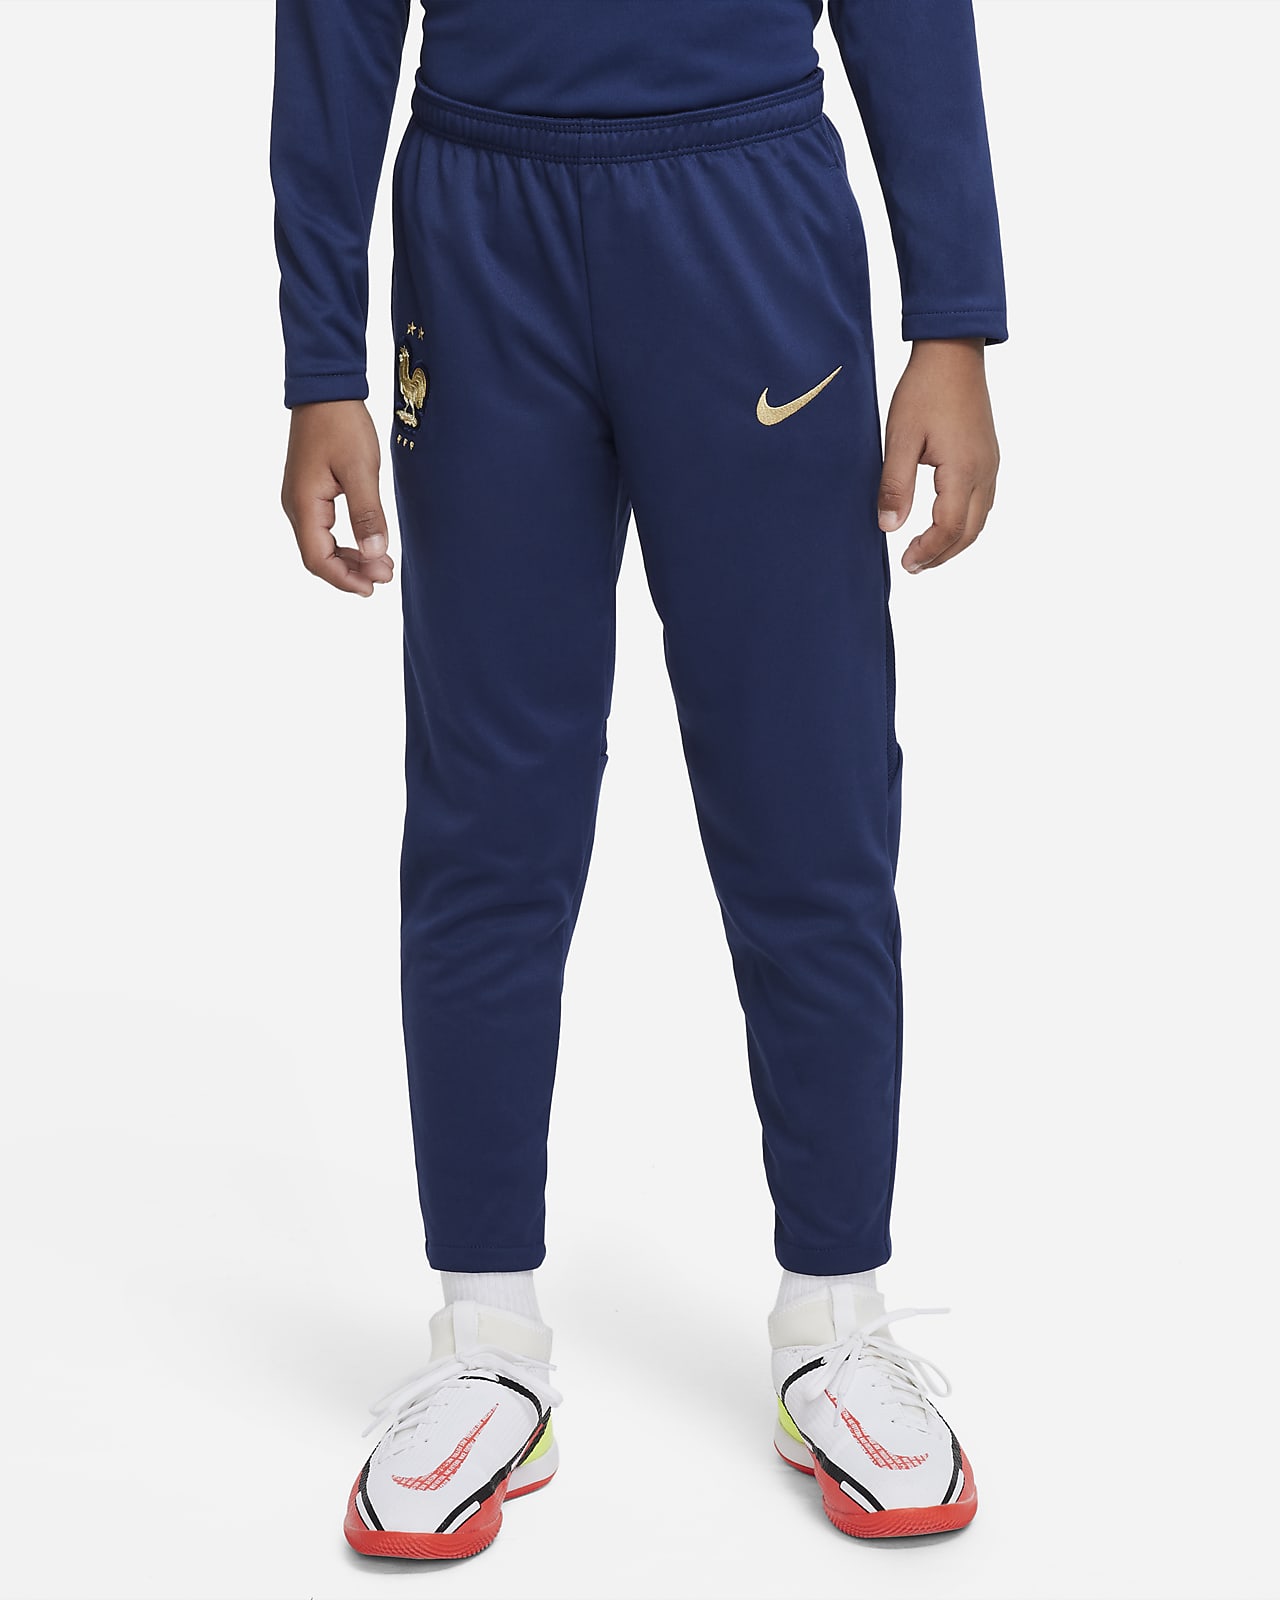 FFF Academy Pro Pantalón de fútbol Nike - Niño/a pequeño/a.